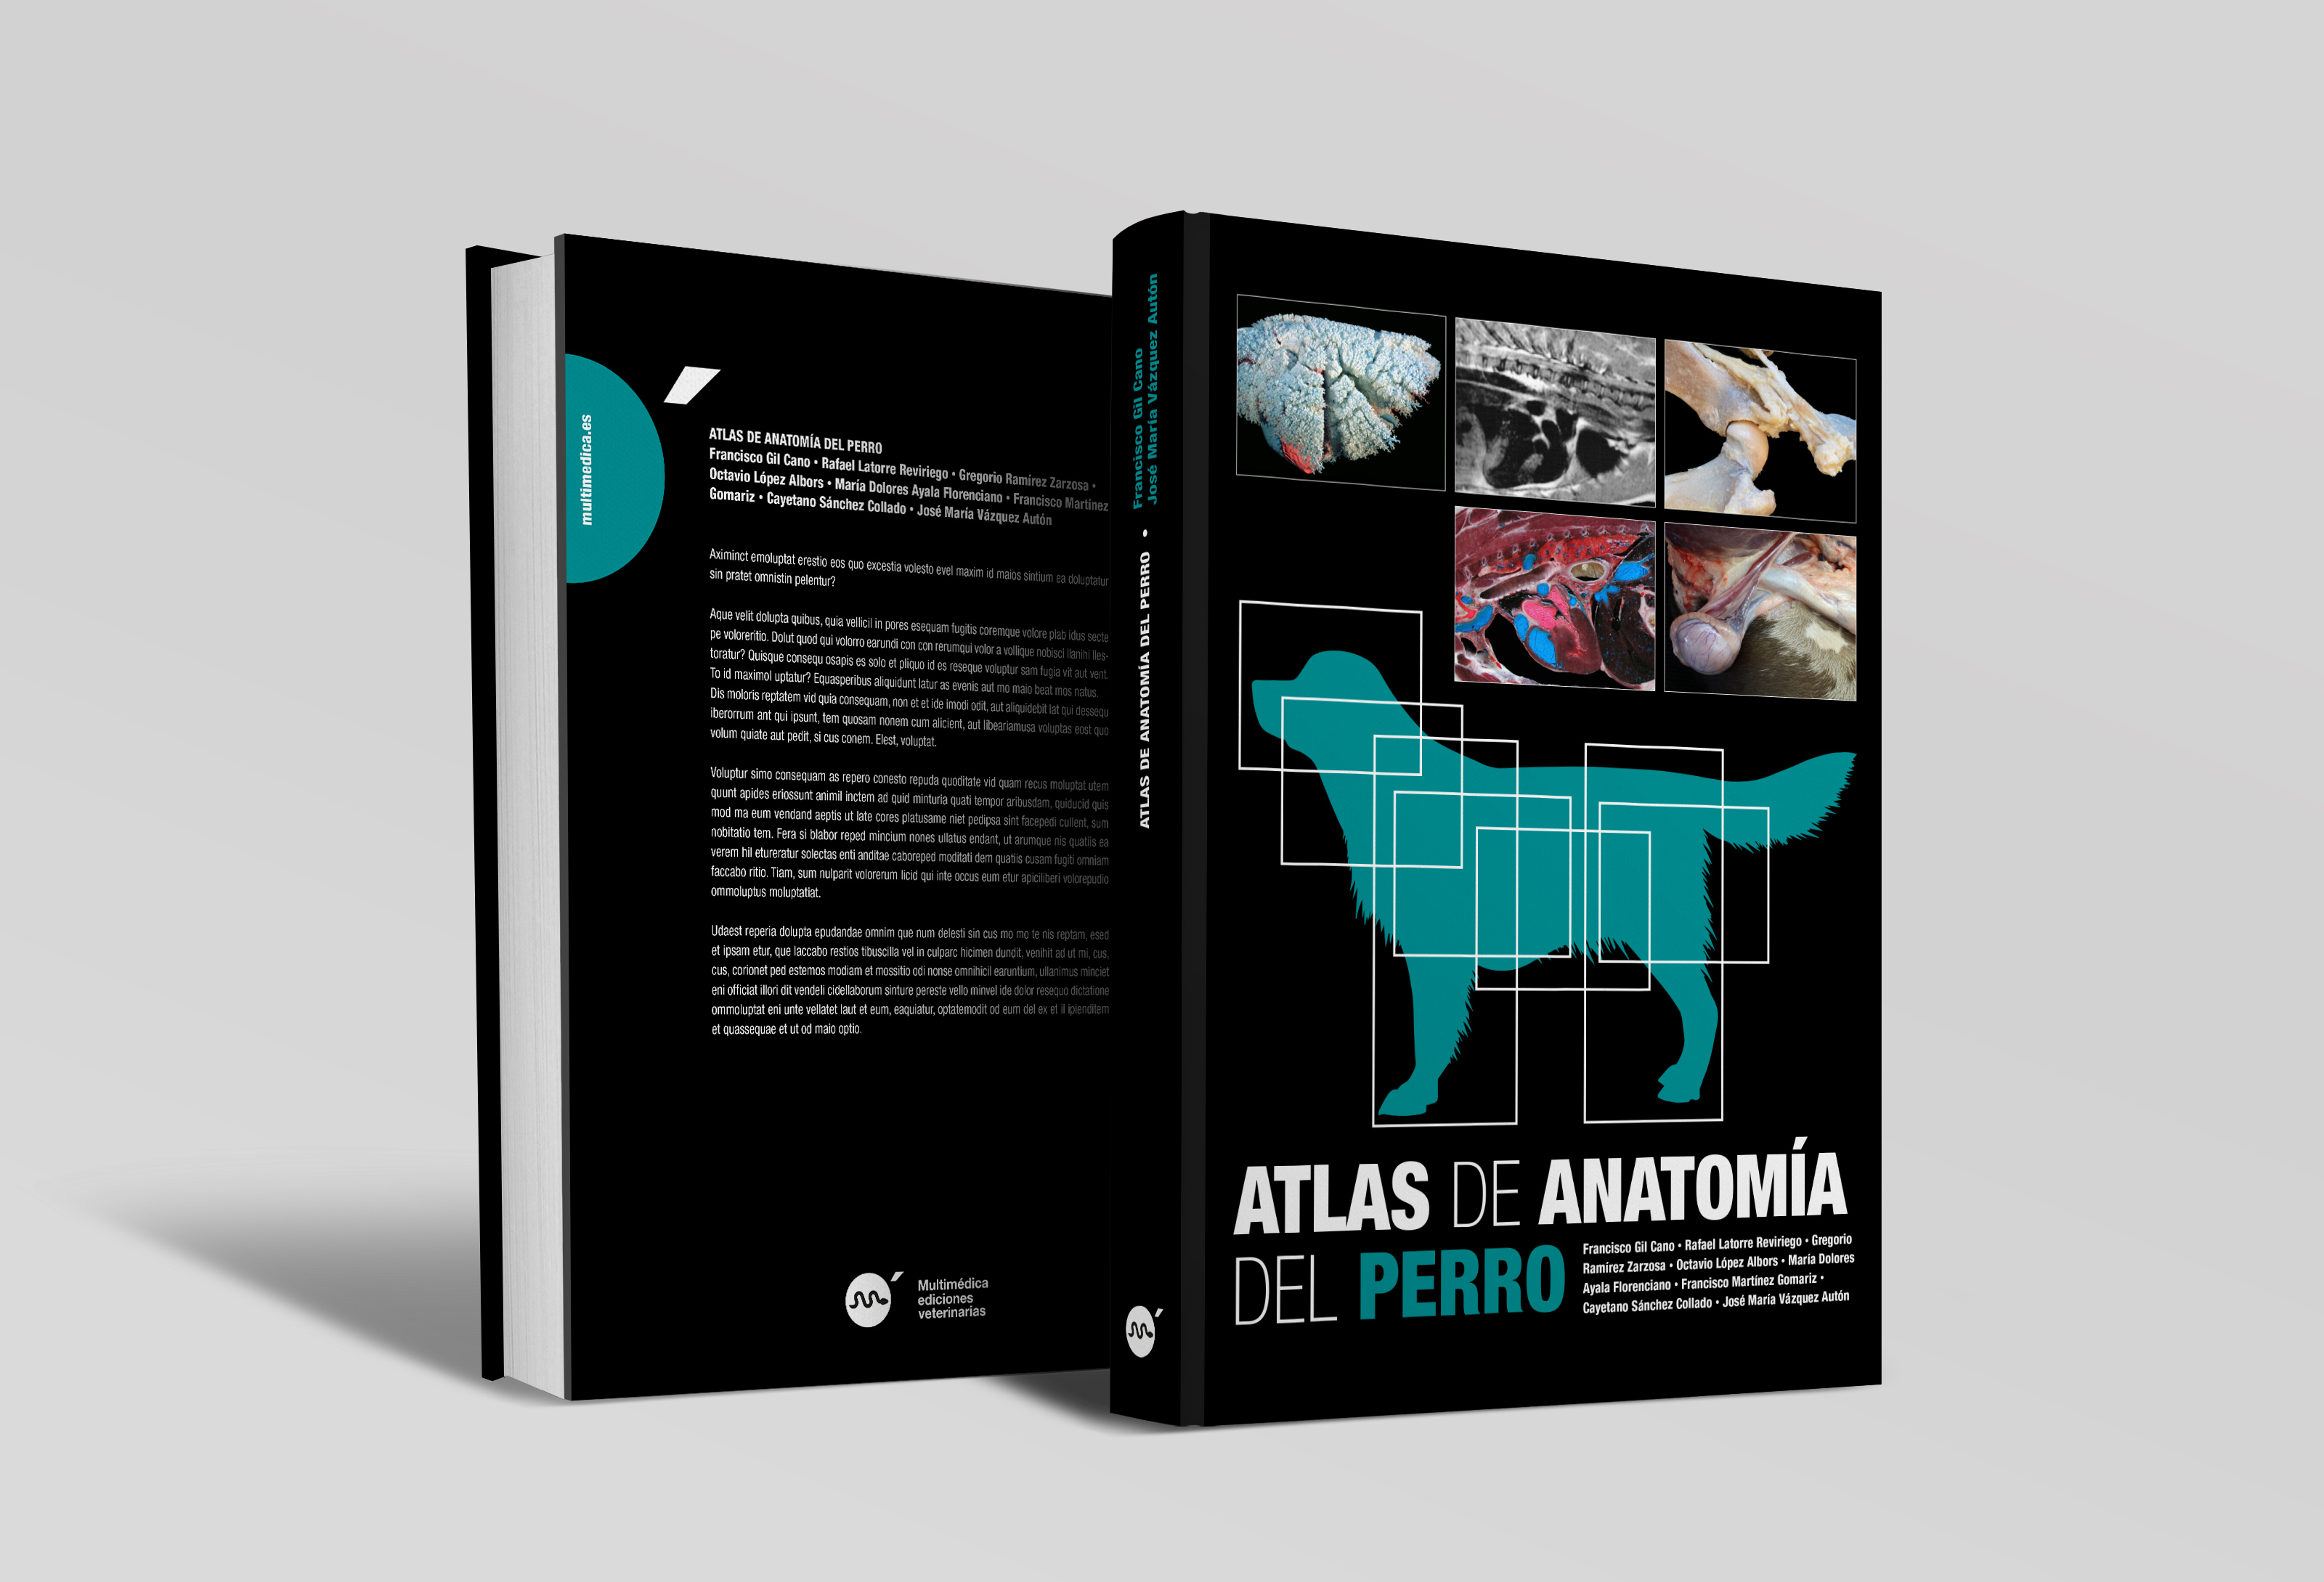 Atlas de anatomía del perro